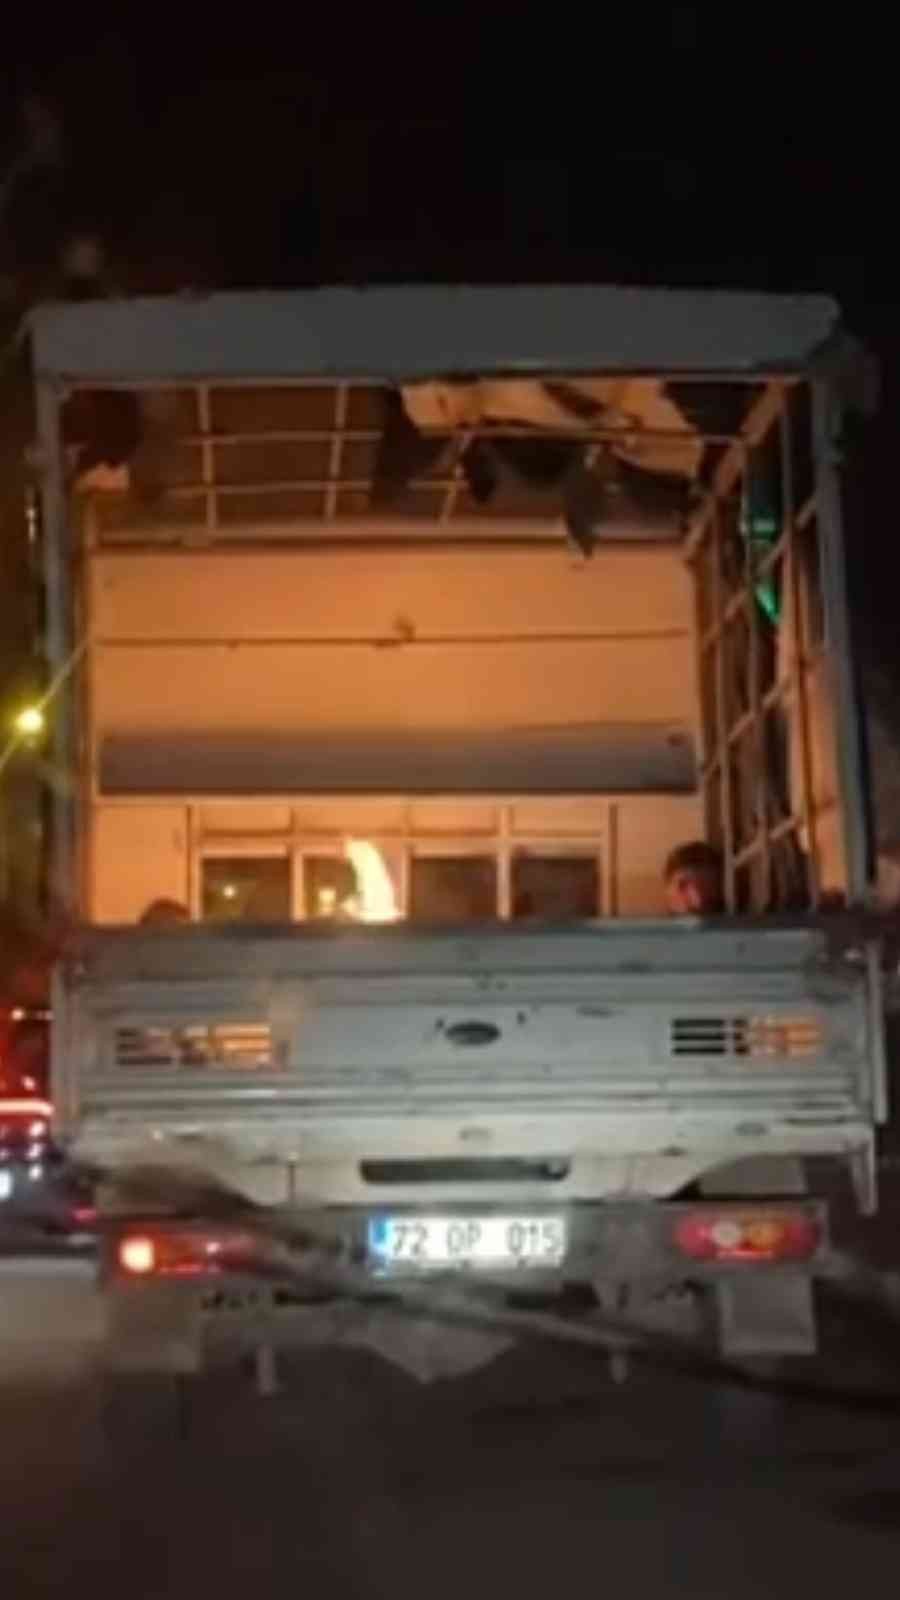 Vatandaşlar eksi 2 derecede kamyonetin kasasında ateş yakarak ısındı #batman